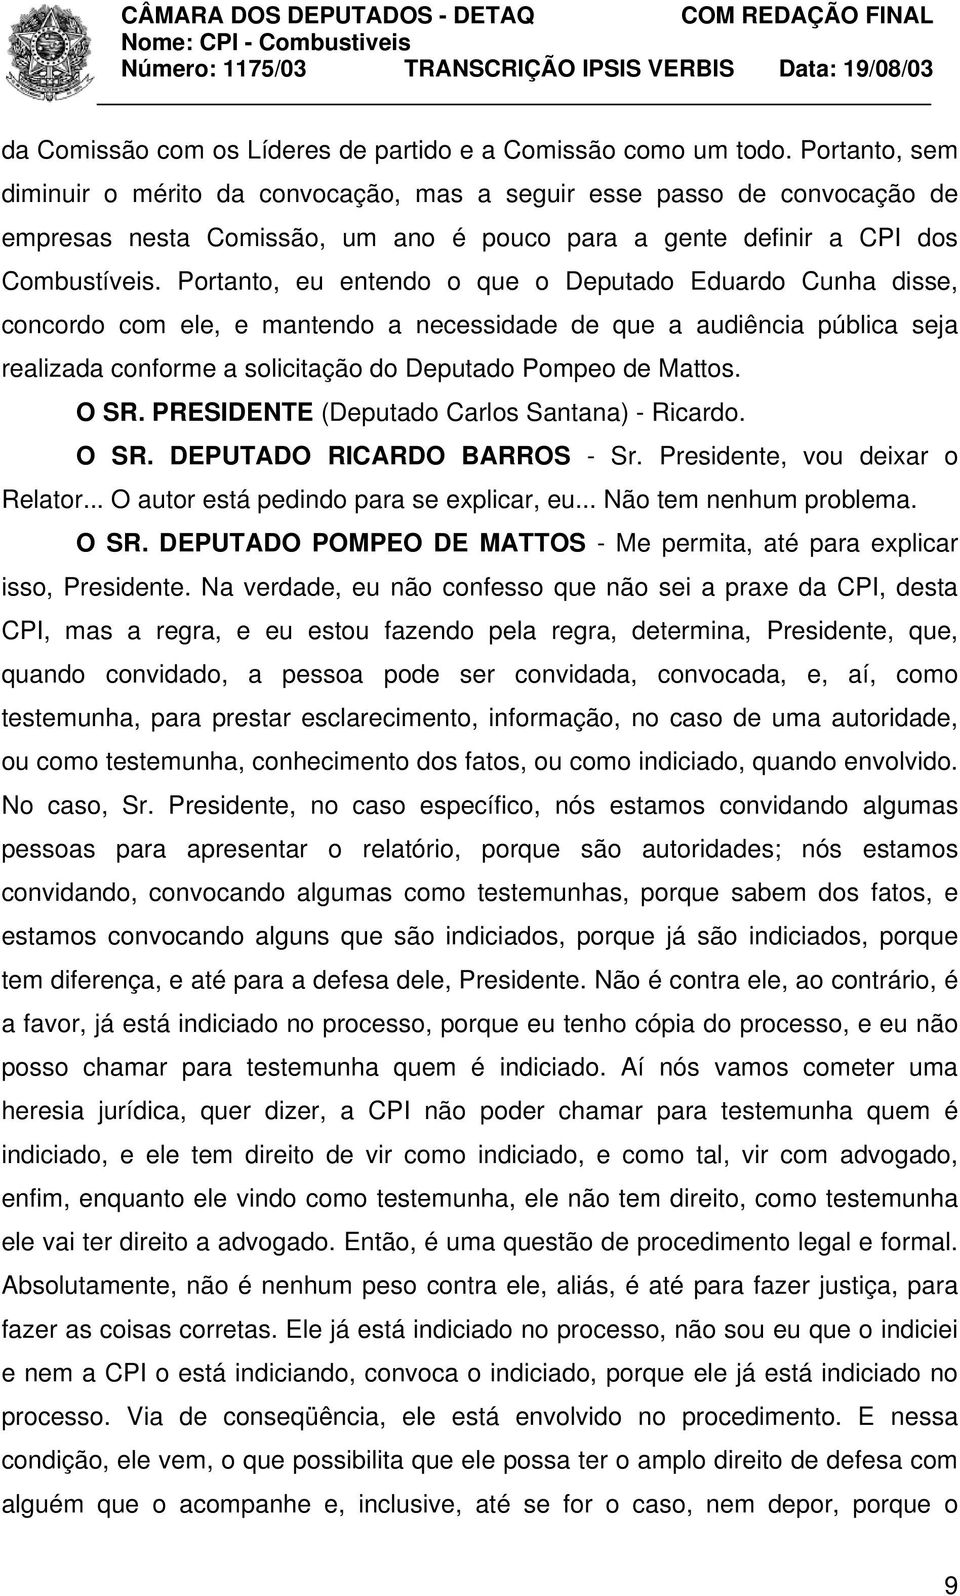 Portanto, eu entendo o que o Deputado Eduardo Cunha disse, concordo com ele, e mantendo a necessidade de que a audiência pública seja realizada conforme a solicitação do Deputado Pompeo de Mattos.